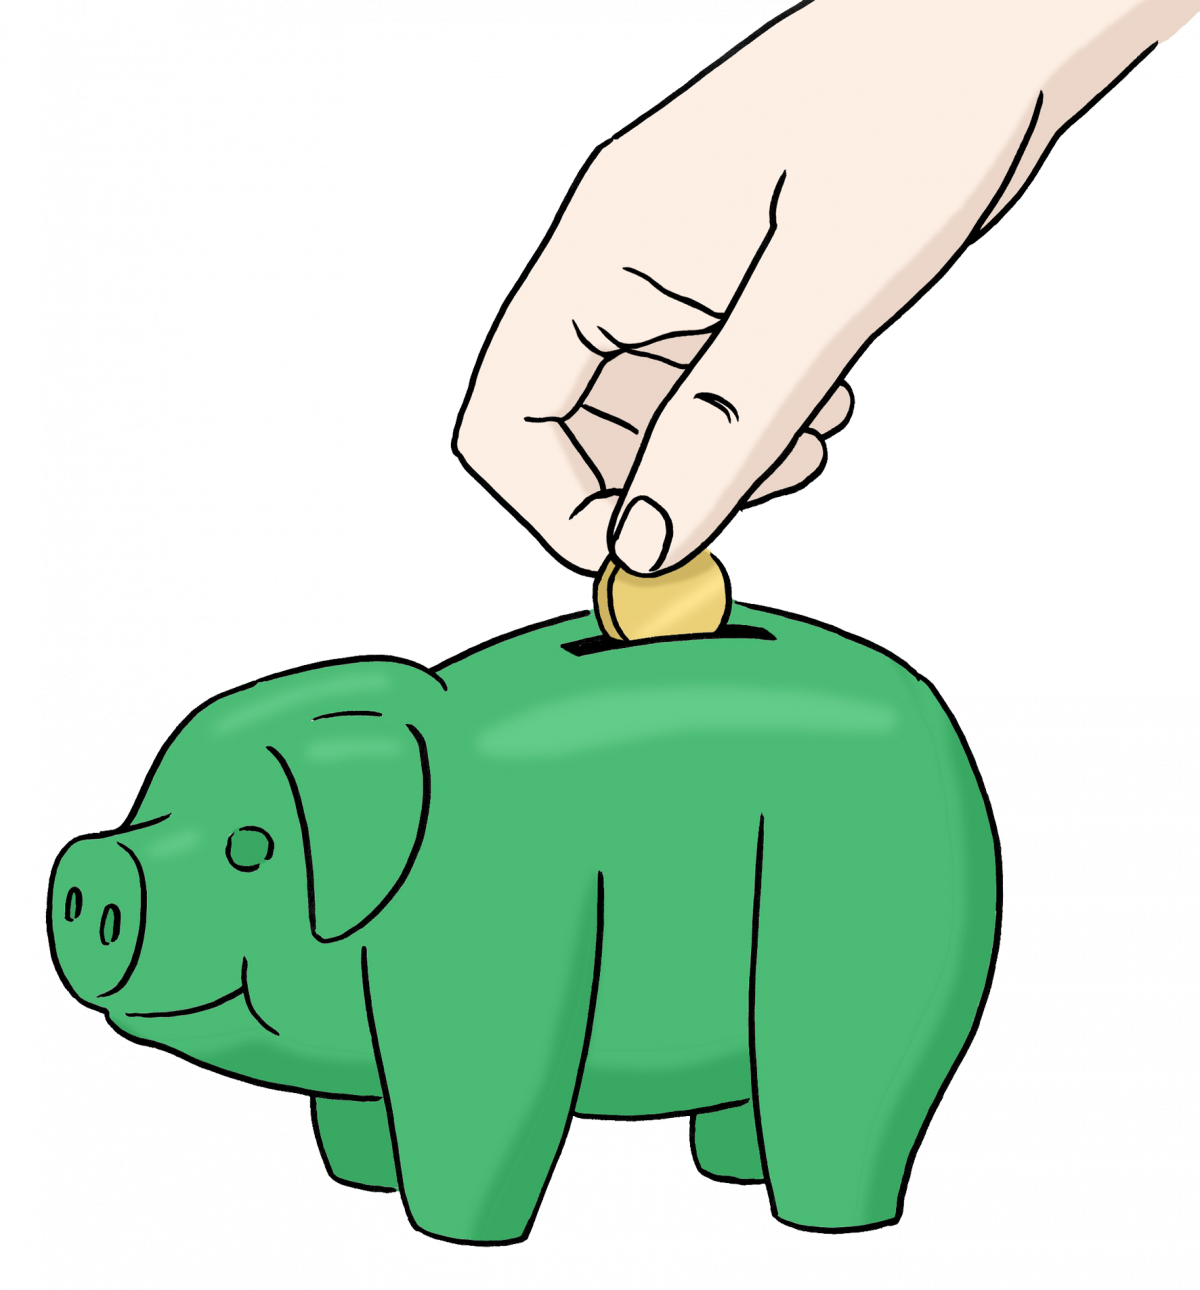 Eine Zeichnung eines grünen Sparschweins, in das gerade eine Münze gesteckt wird.